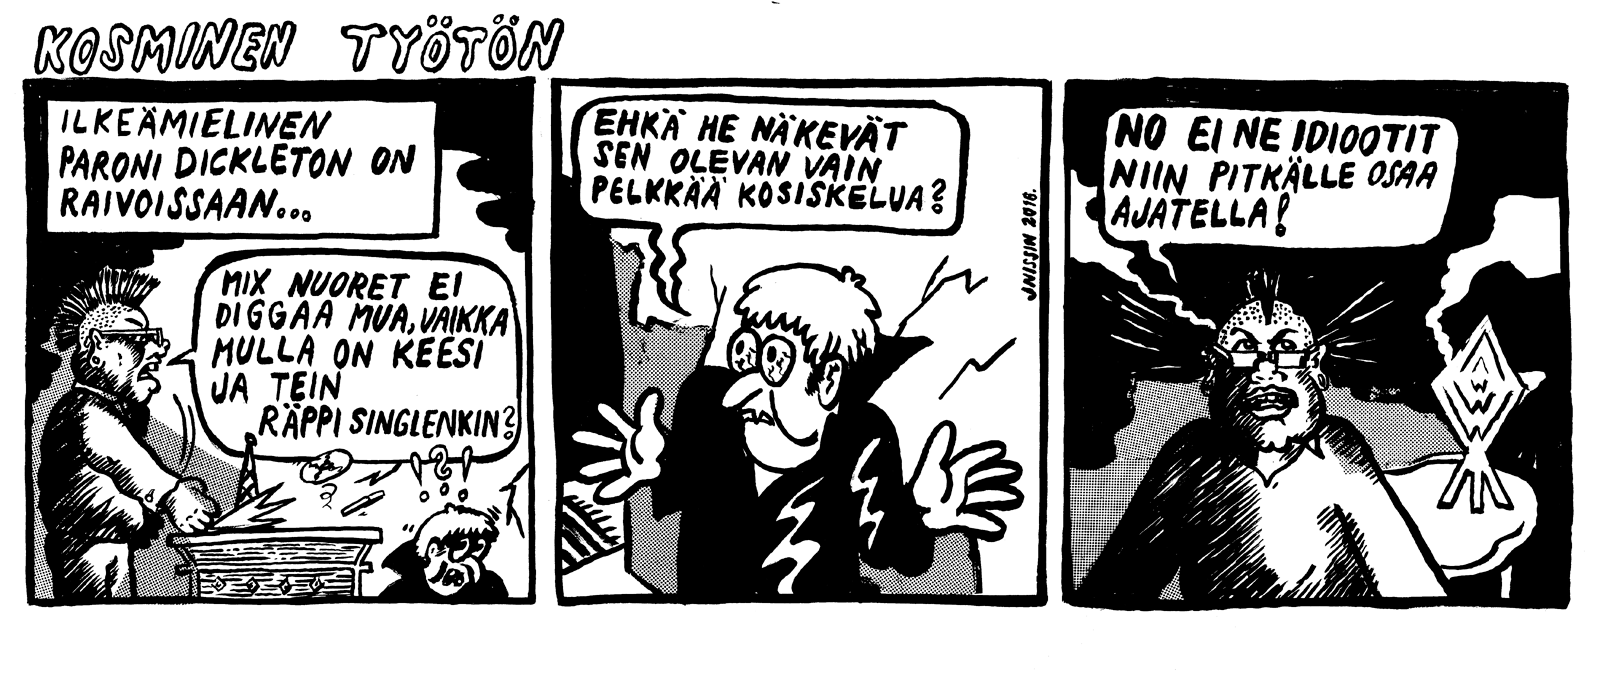 Sarjakuva: Jyrki Nissinen.